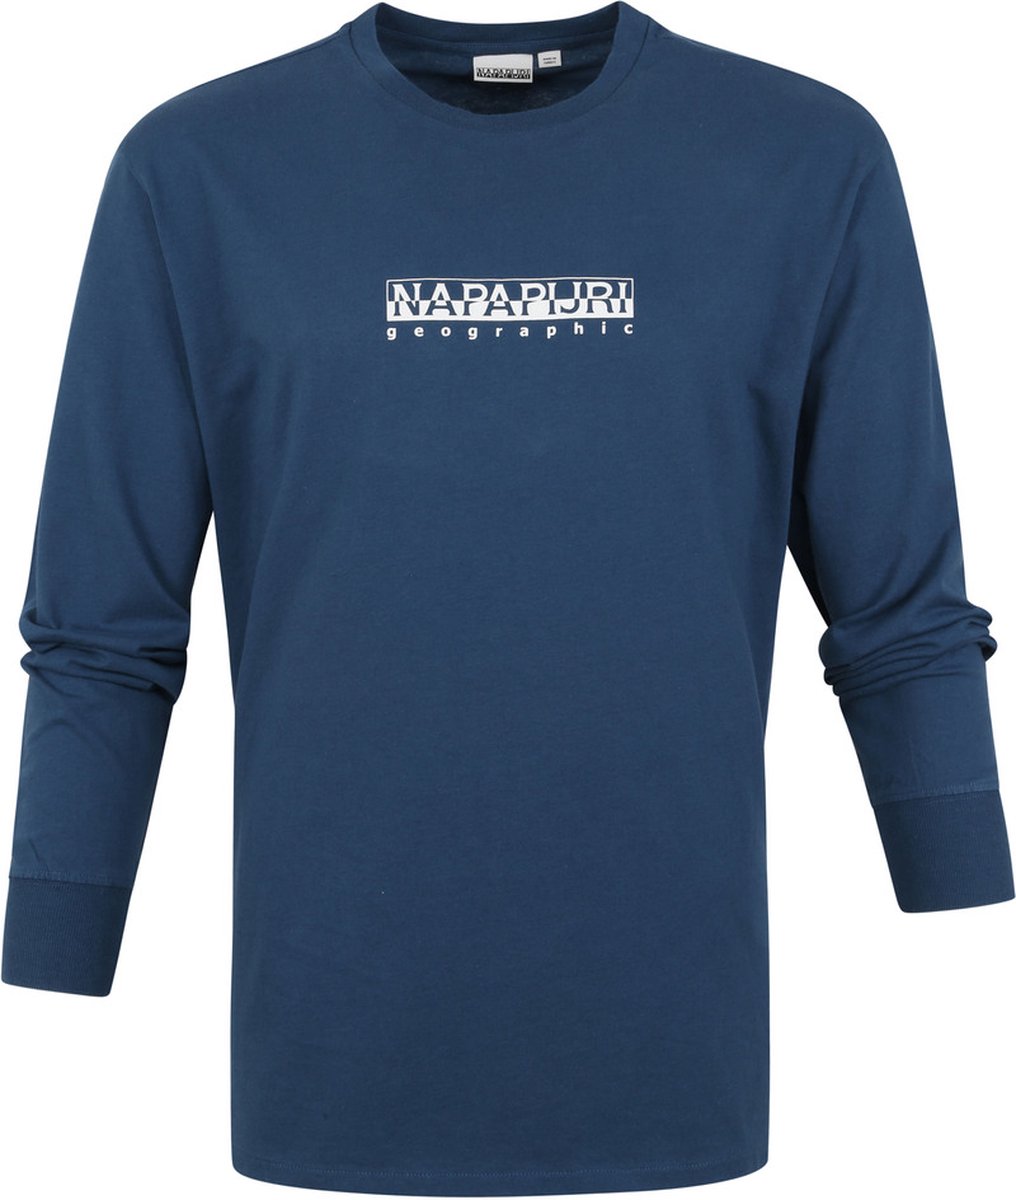 Napapijri - S-Box Longsleeve T-shirt Blauw - Maat L - Regular-fit | bol.com